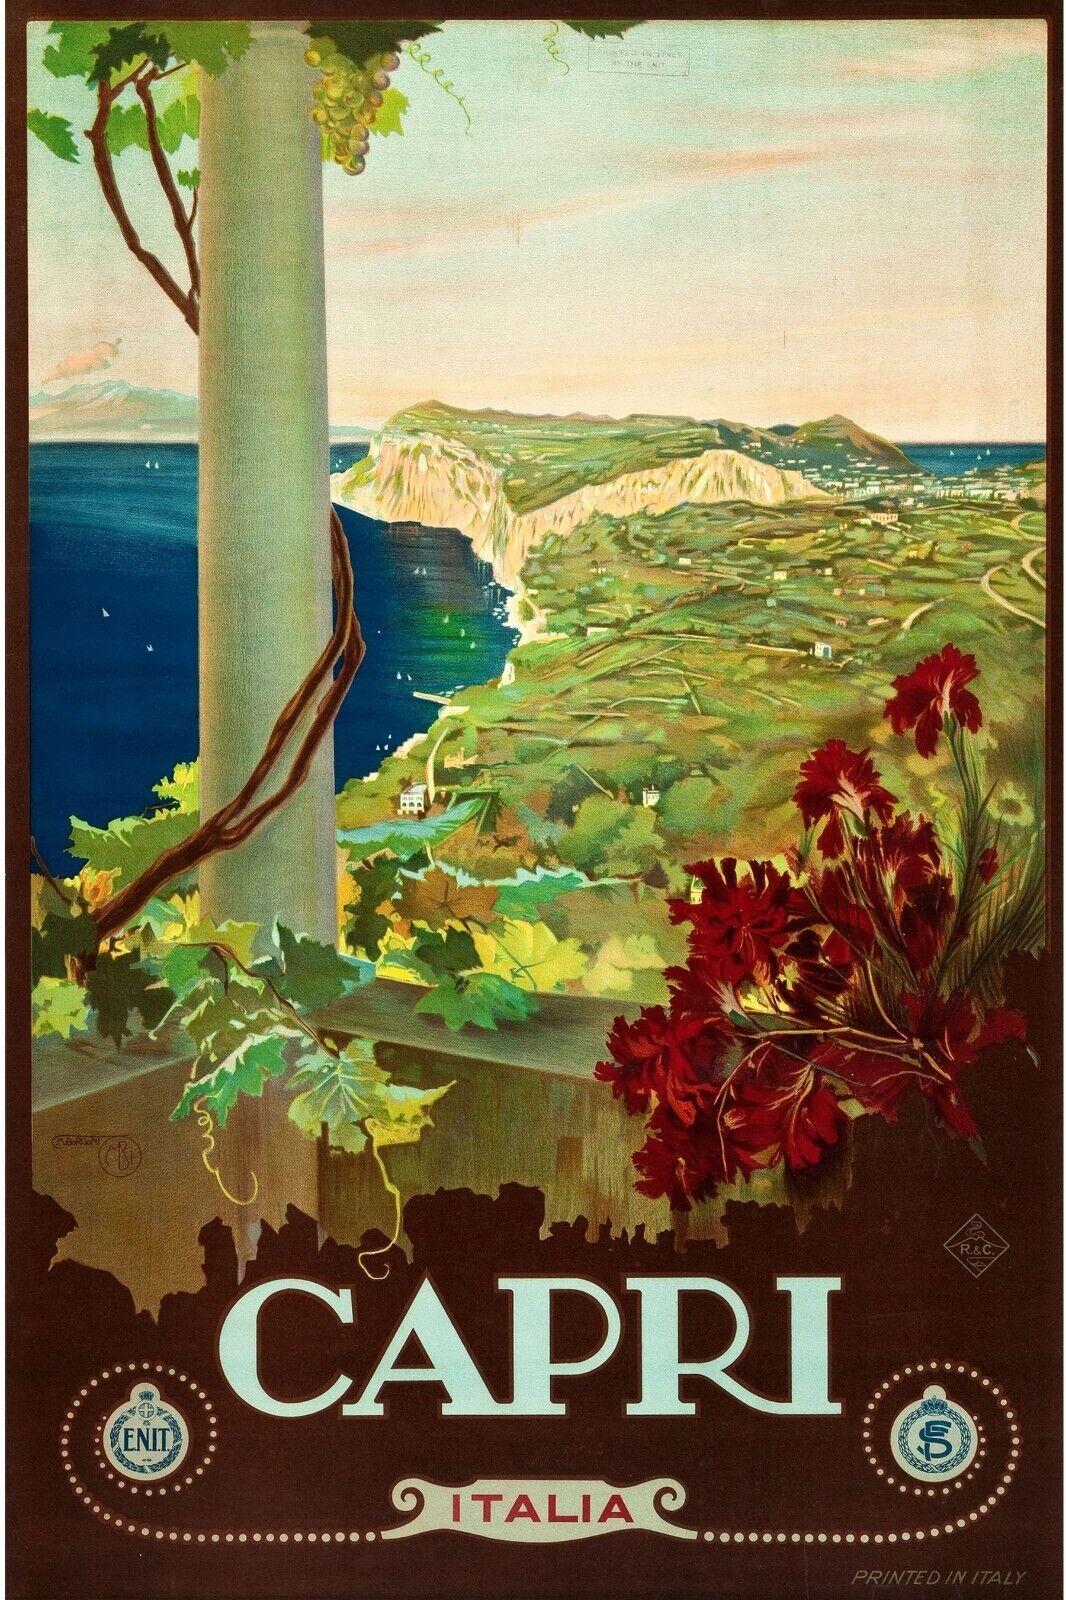 Capri Italy  Postcards 1930s Retro Original Travel Poster art  Set Of 6